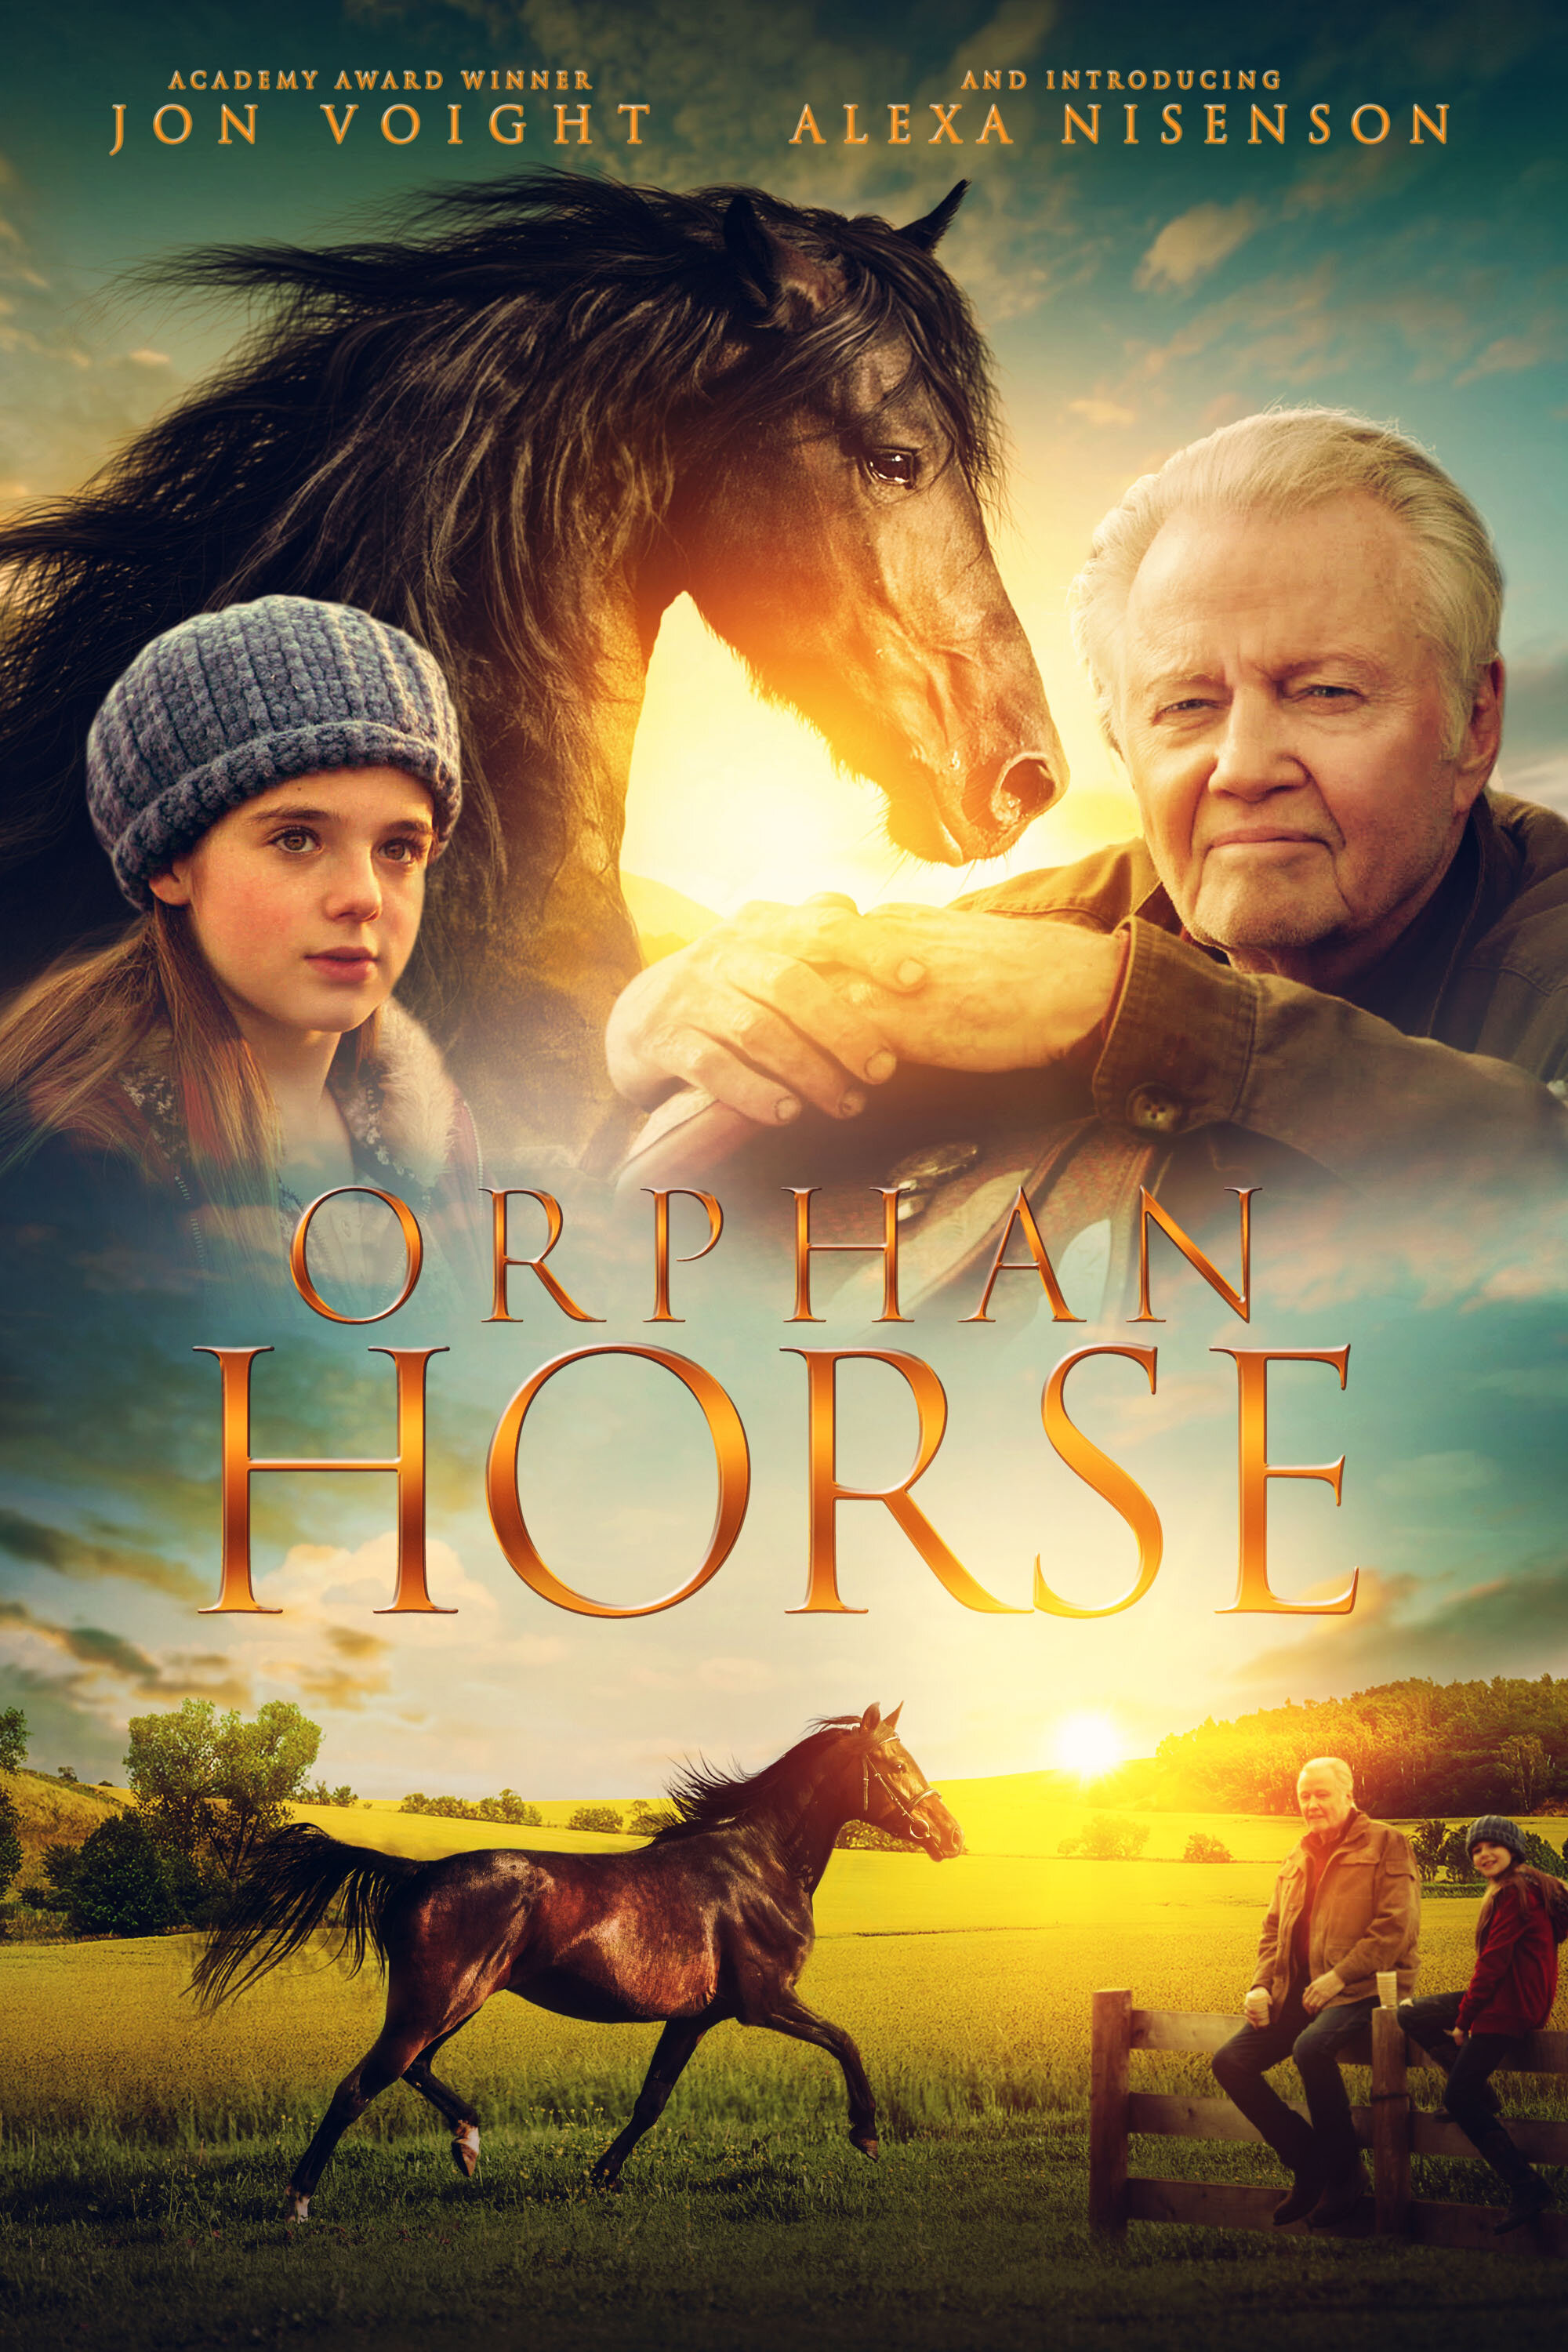 Orphan-Horse-Poster.jpg